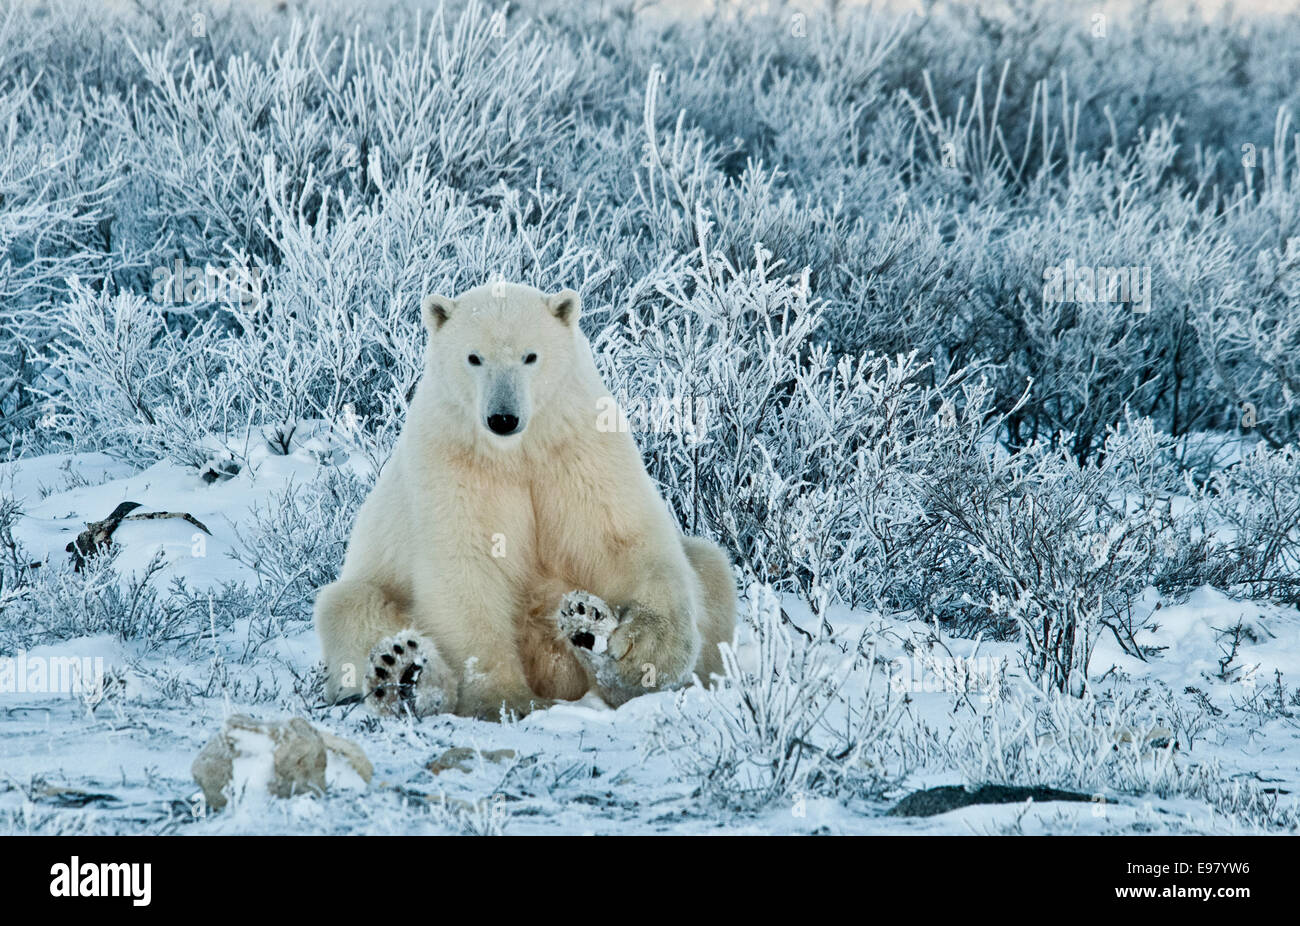 L'ours blanc, Ursus maritimus, assis parmi les wiilows dans le gel, près de Hudson Bay, Cape Churchill, Manitoba, Canada Banque D'Images